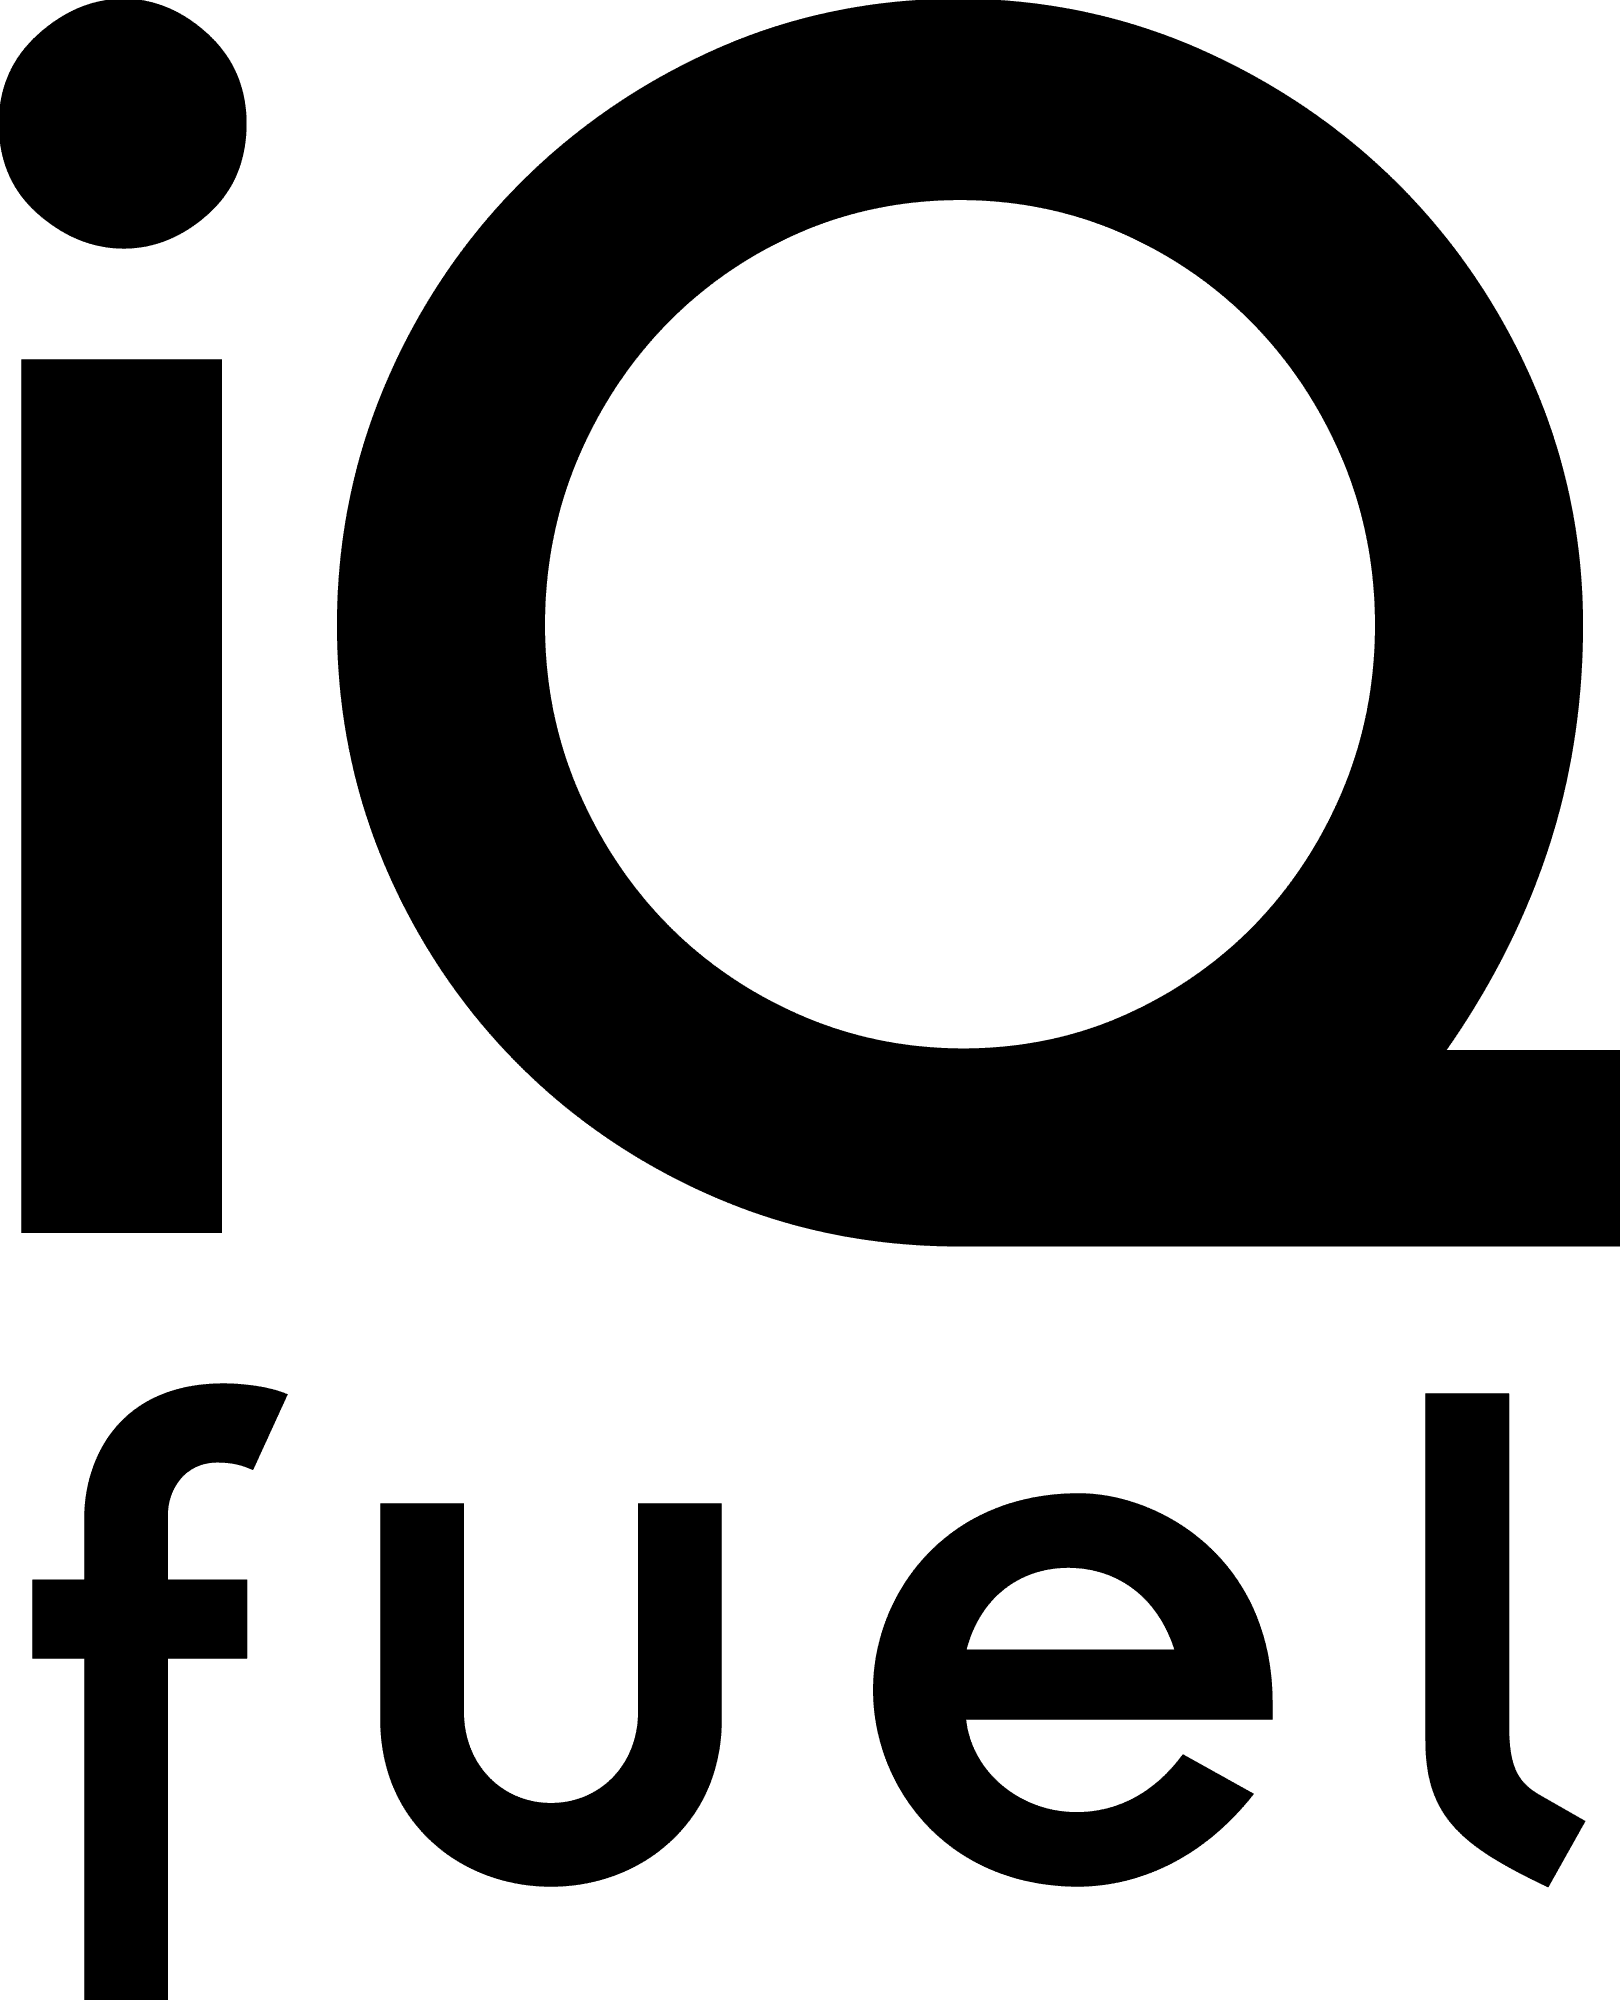 iQ Fuel